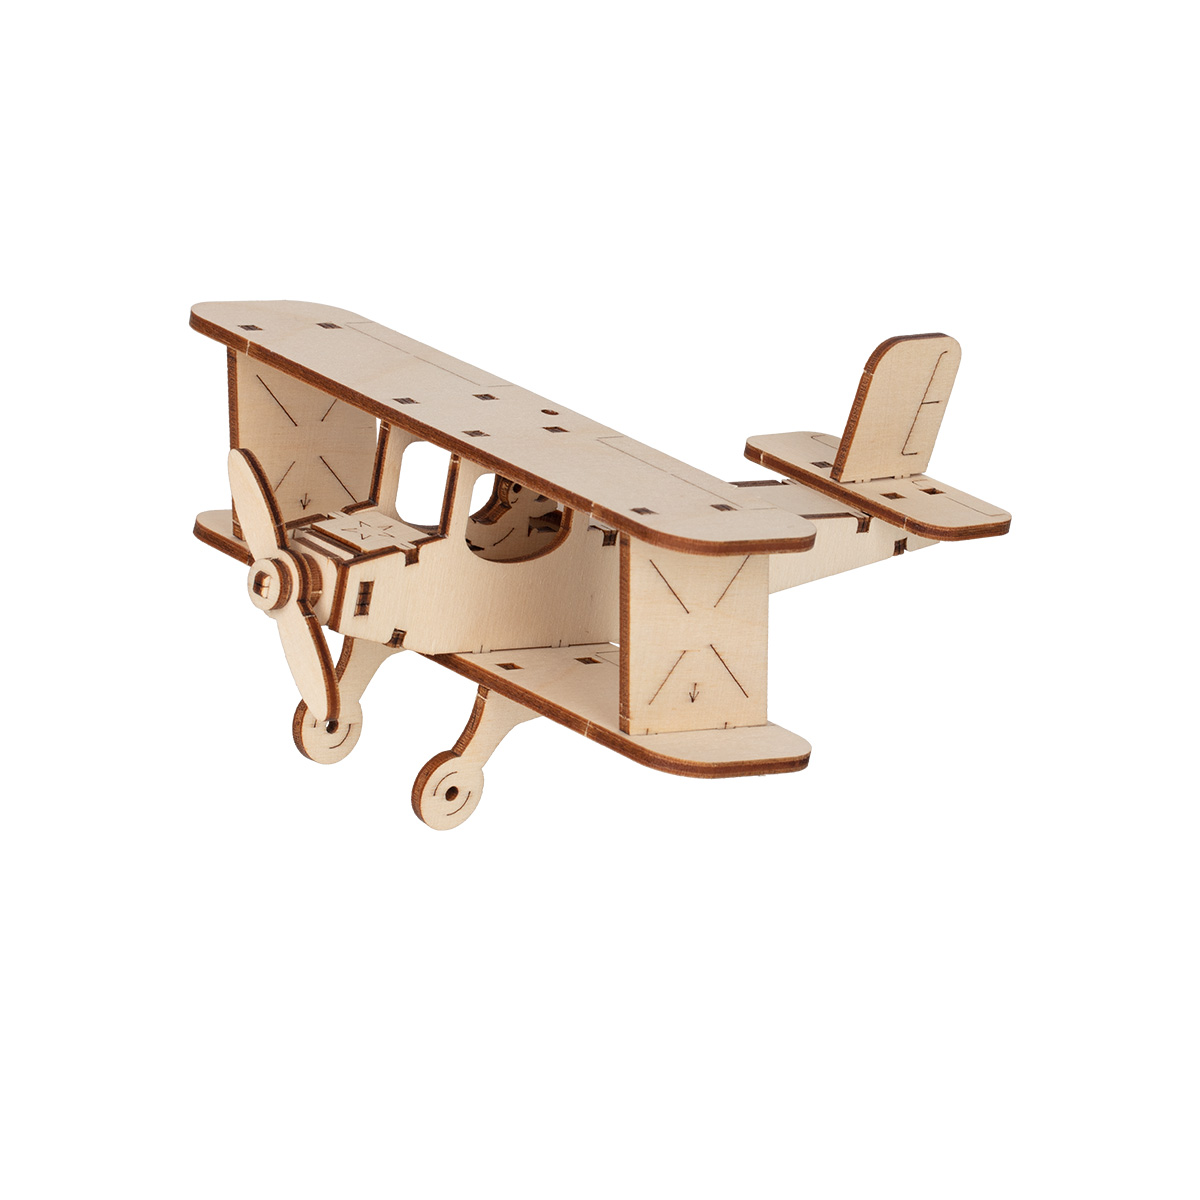 Самолет из фанеры: чертежи моделей. Как сделать макет самолетика лобзиком и лазером своими руками?